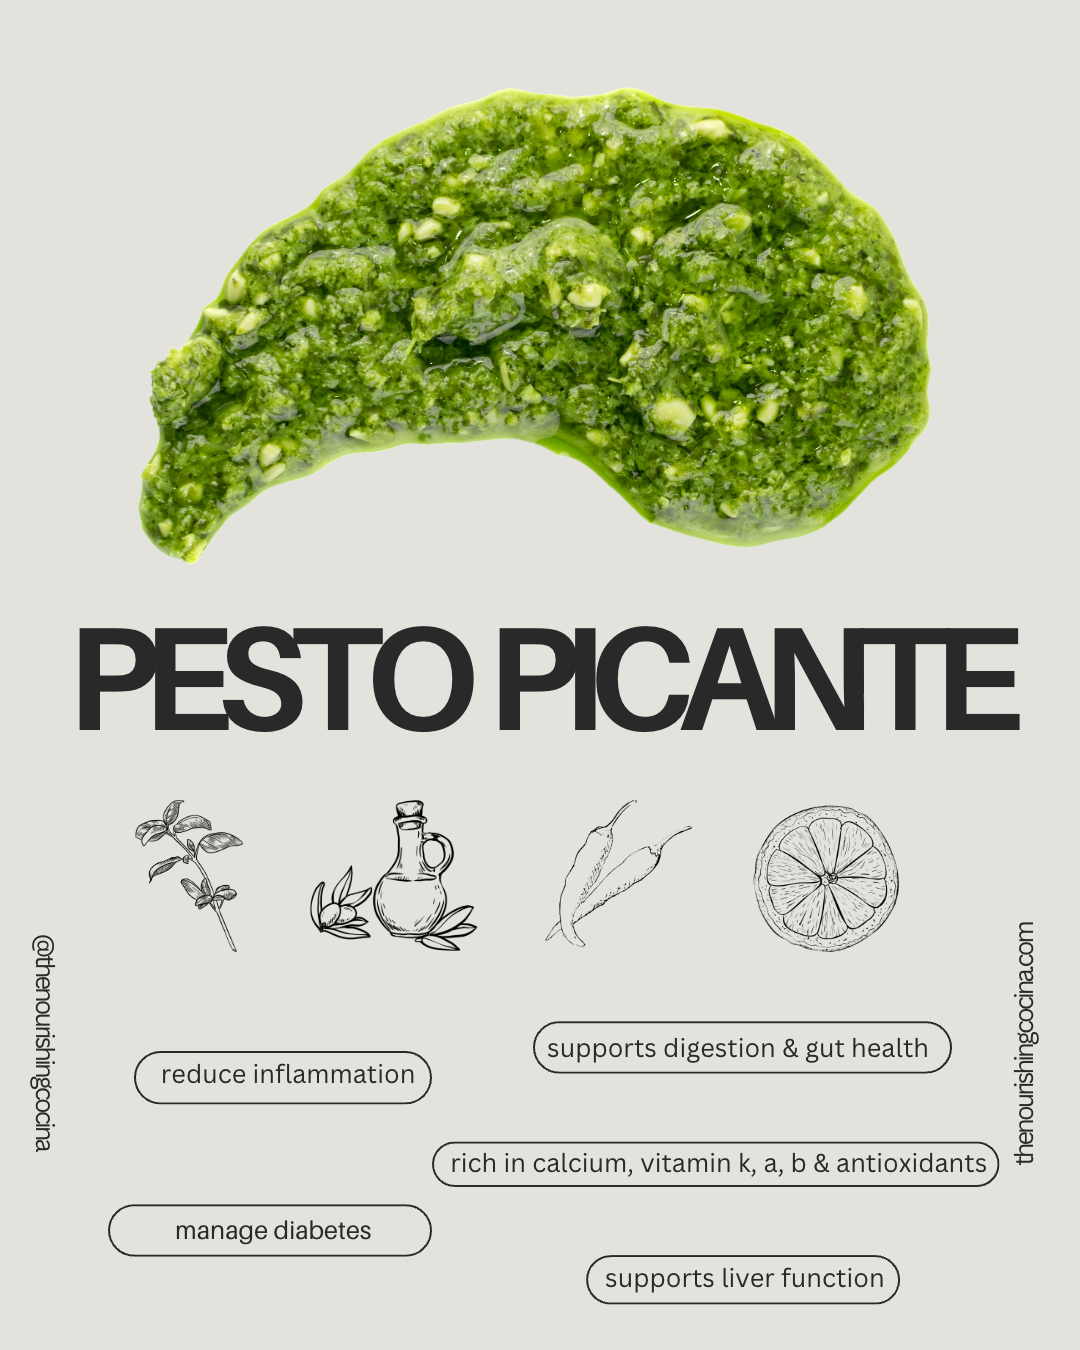 Pesto Picante